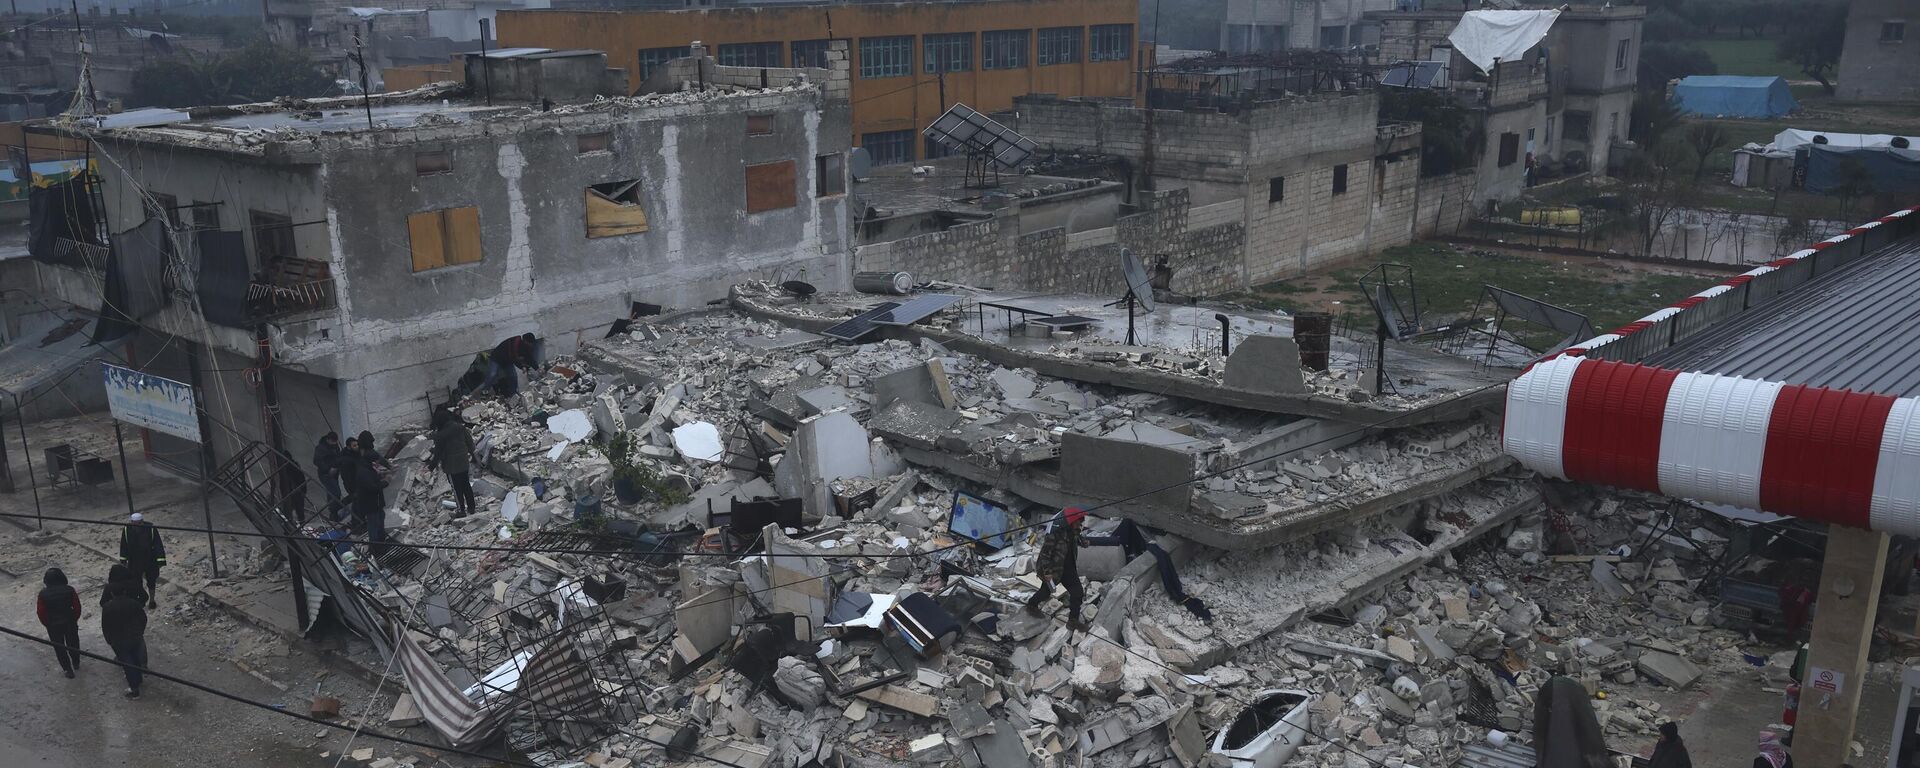 أشخاص يفتشون مبنى منهارًا في أعقاب الزلزال الذي وقع في بلدة أزمارين بمحافظة إدلب شمال سوريا، 6 فبراير 2023 - سبوتنيك عربي, 1920, 11.02.2023